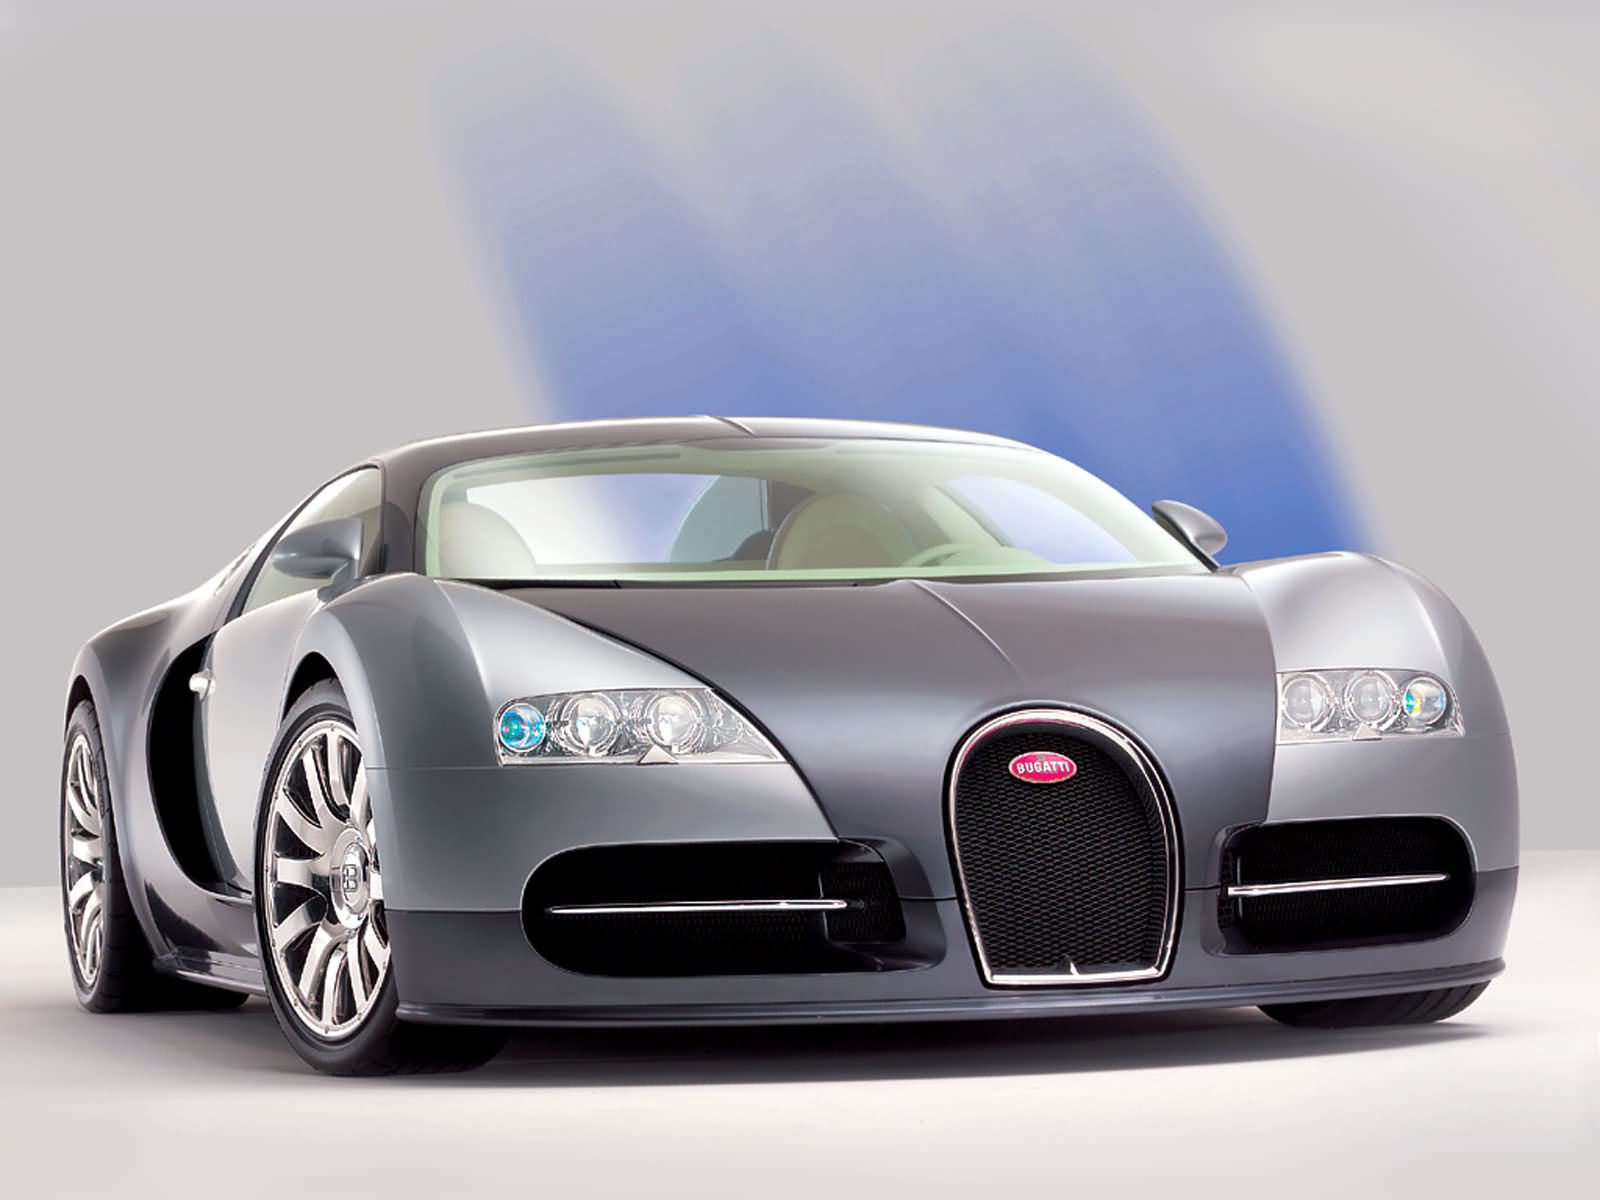 Silver Bugatti Veyron Wallpaper Desktop